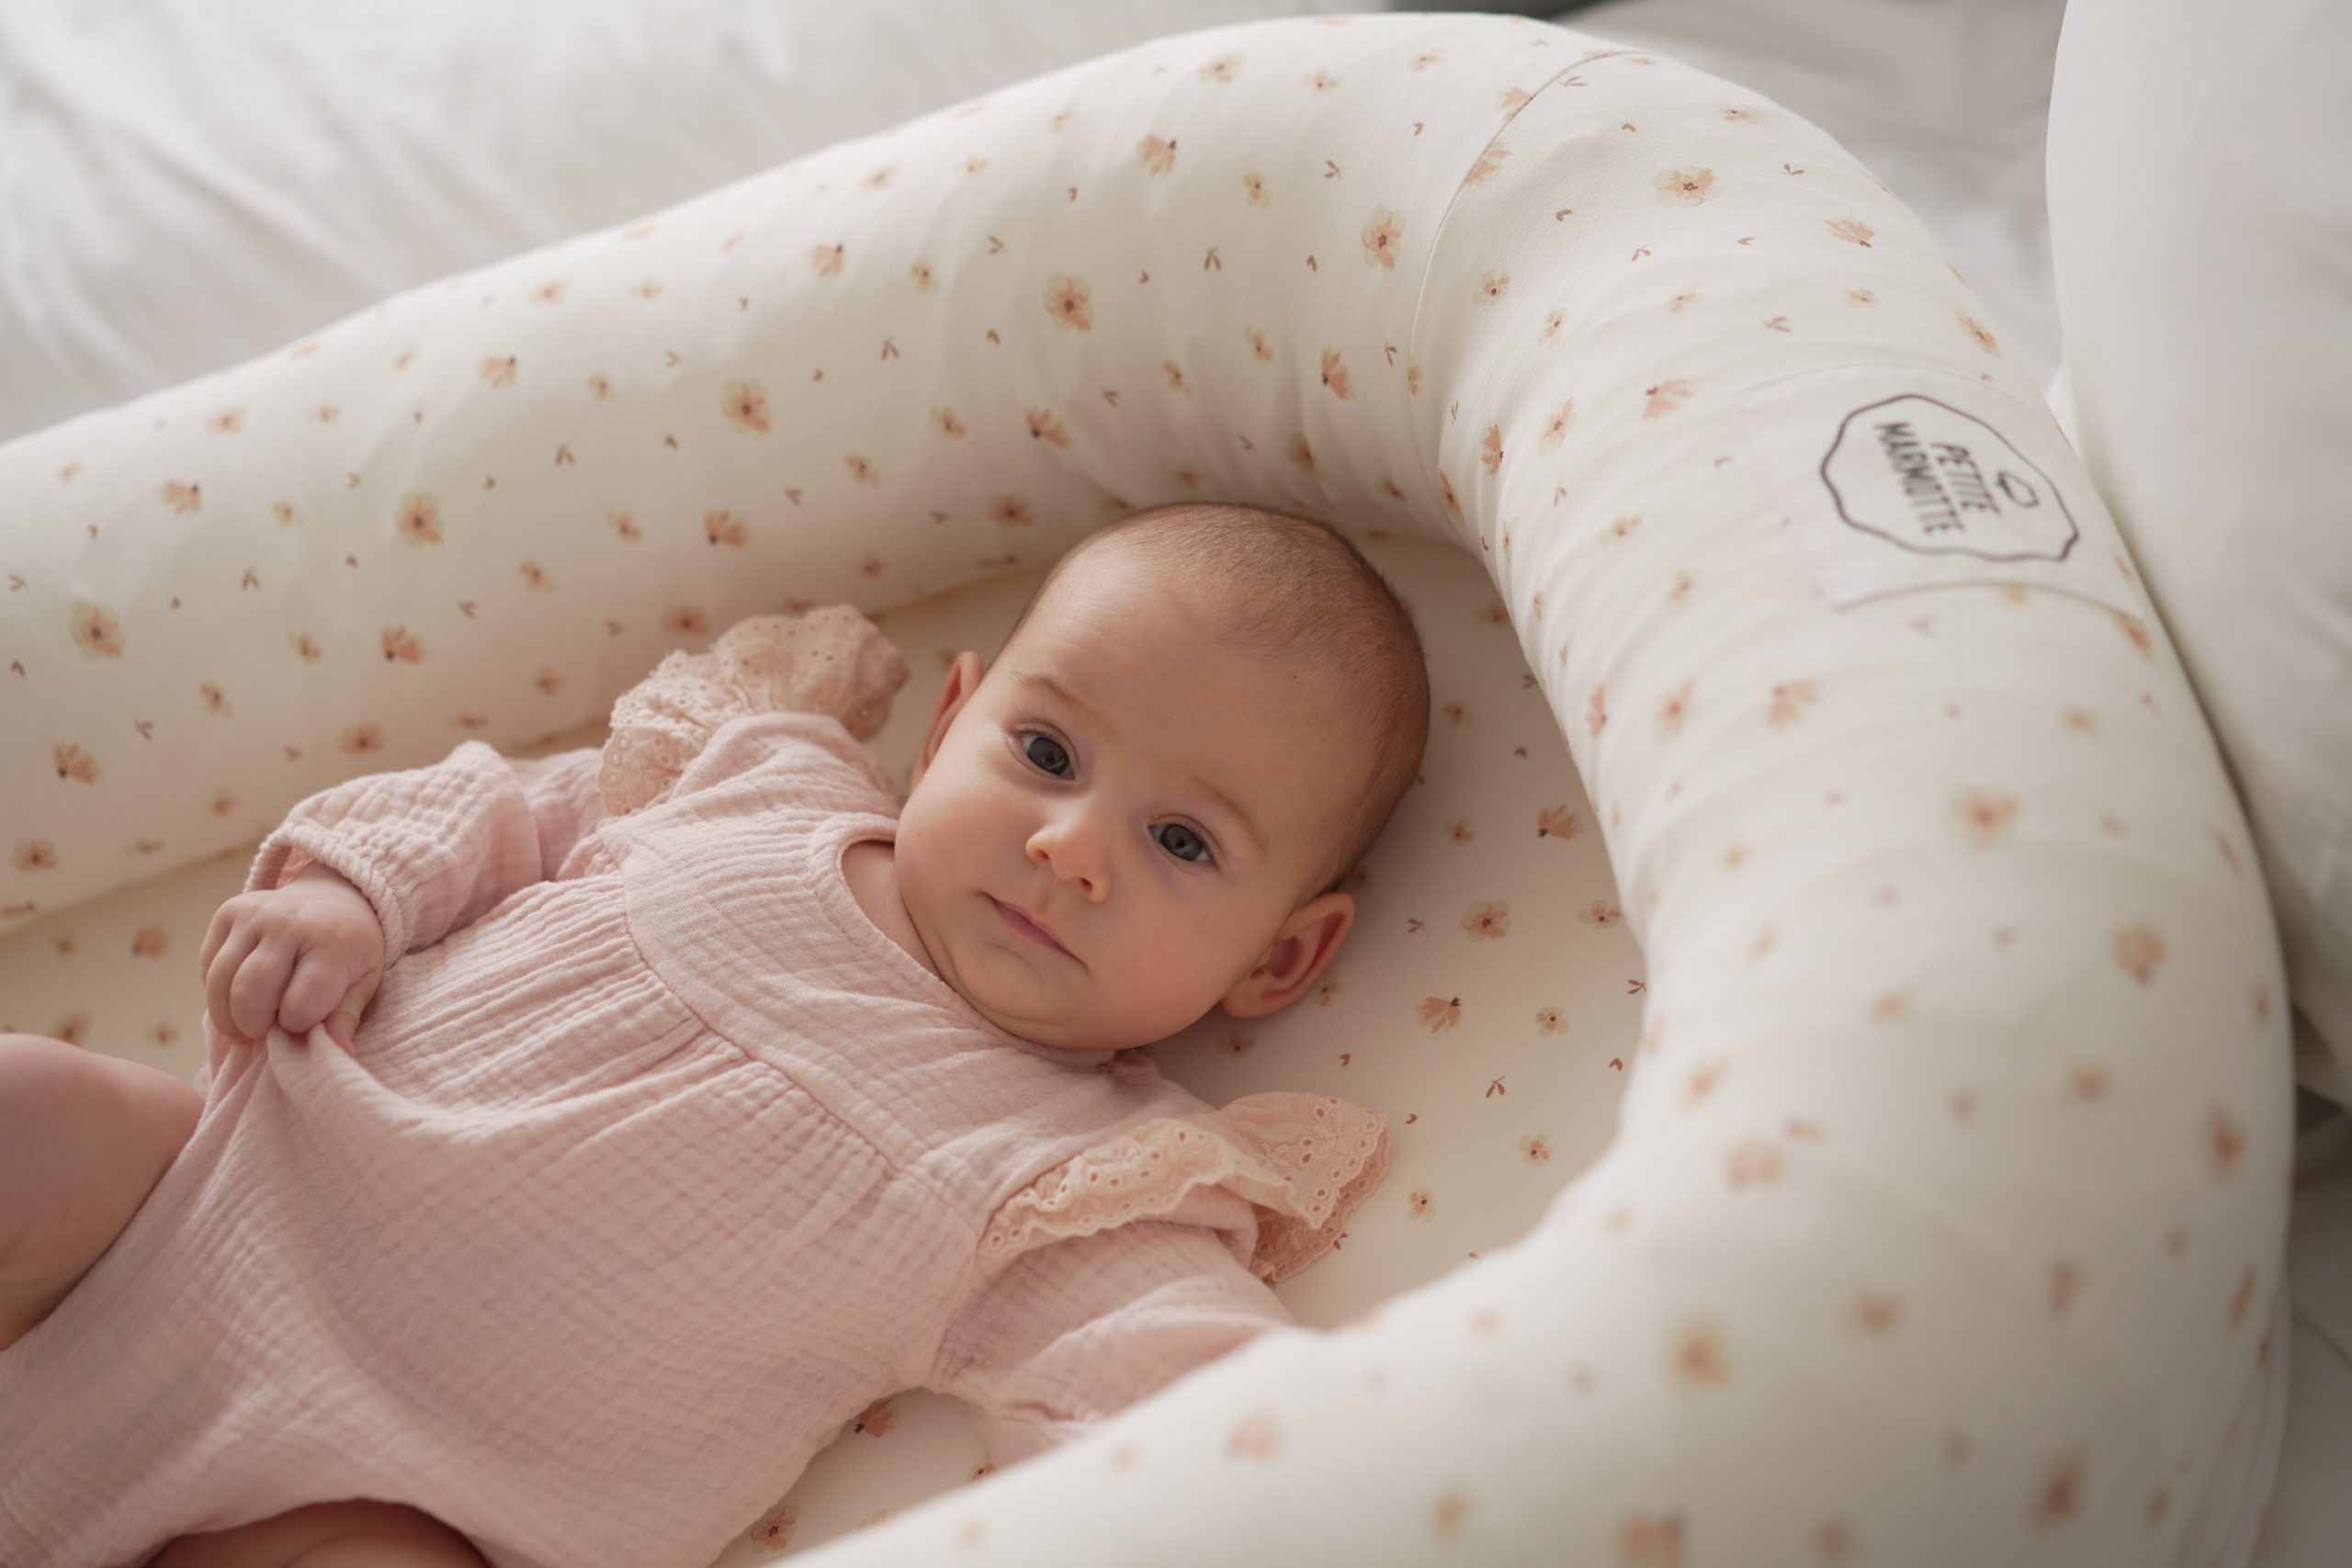 Regalos personalizados para bebés - Petite Marmotte Blog